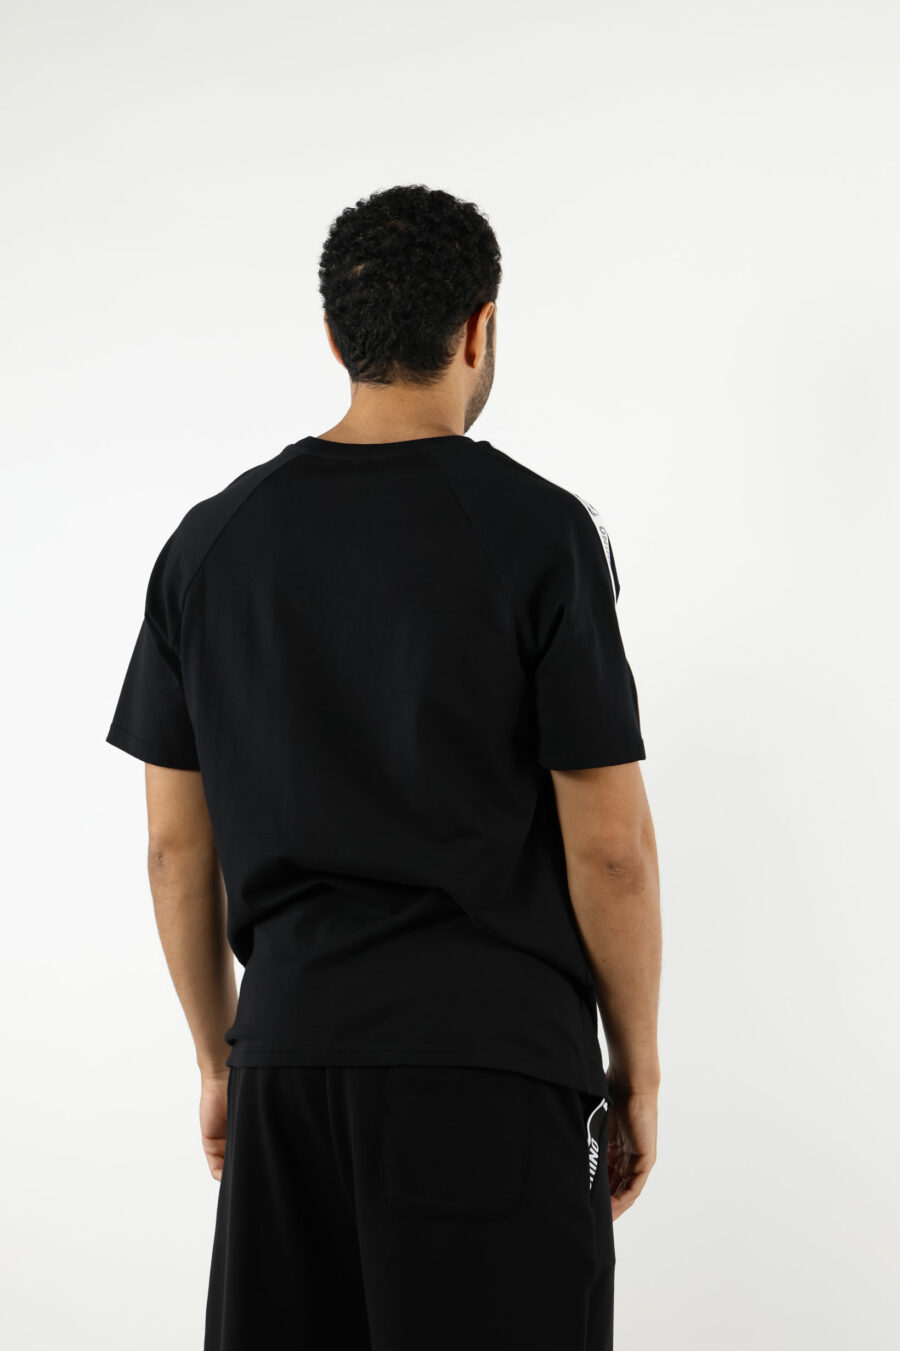 Camiseta negra con logo oso "underbear" en cinta hombros - 111000